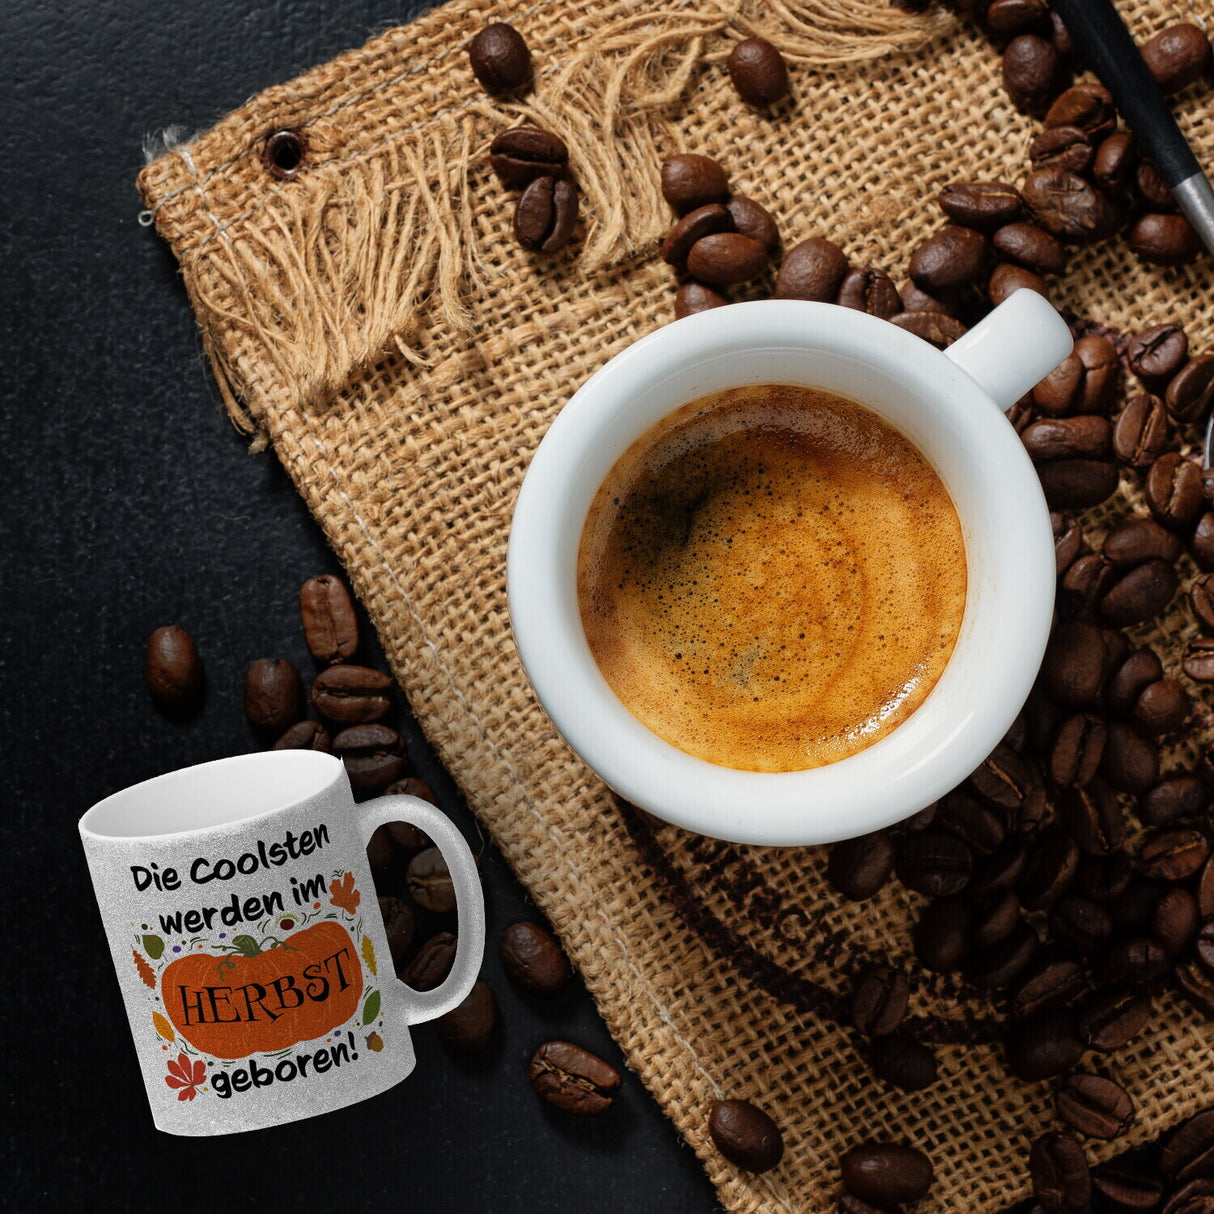 Die Coolsten werden im Herbst geboren Kaffeebecher mit Kürbis Motiv